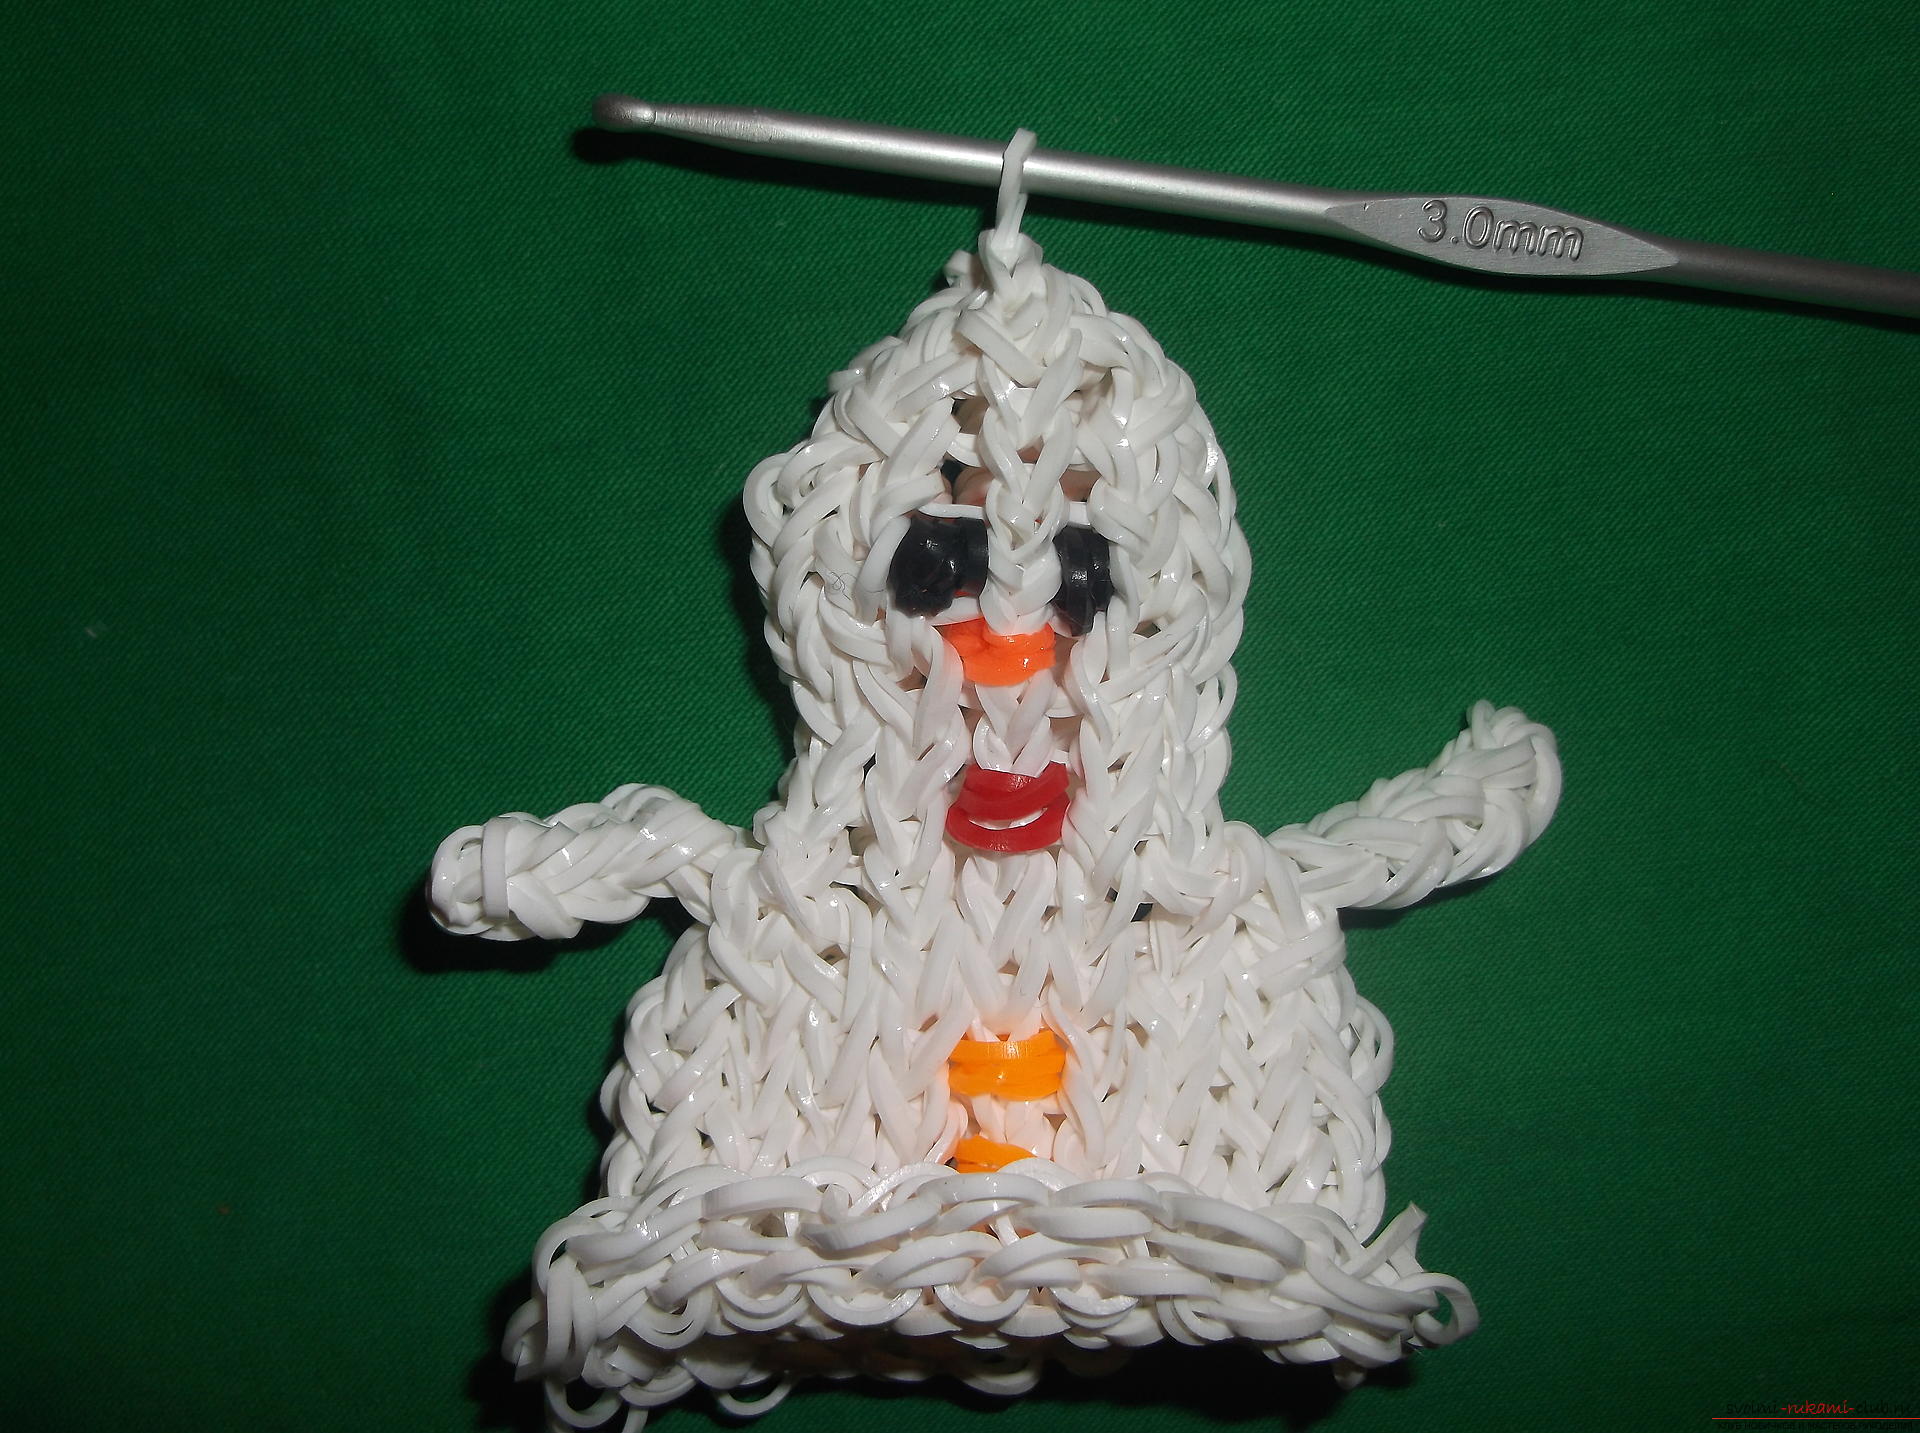 Фото к уроку по плетению из резиночек снеговичка к новогодним праздникам. Фото №15